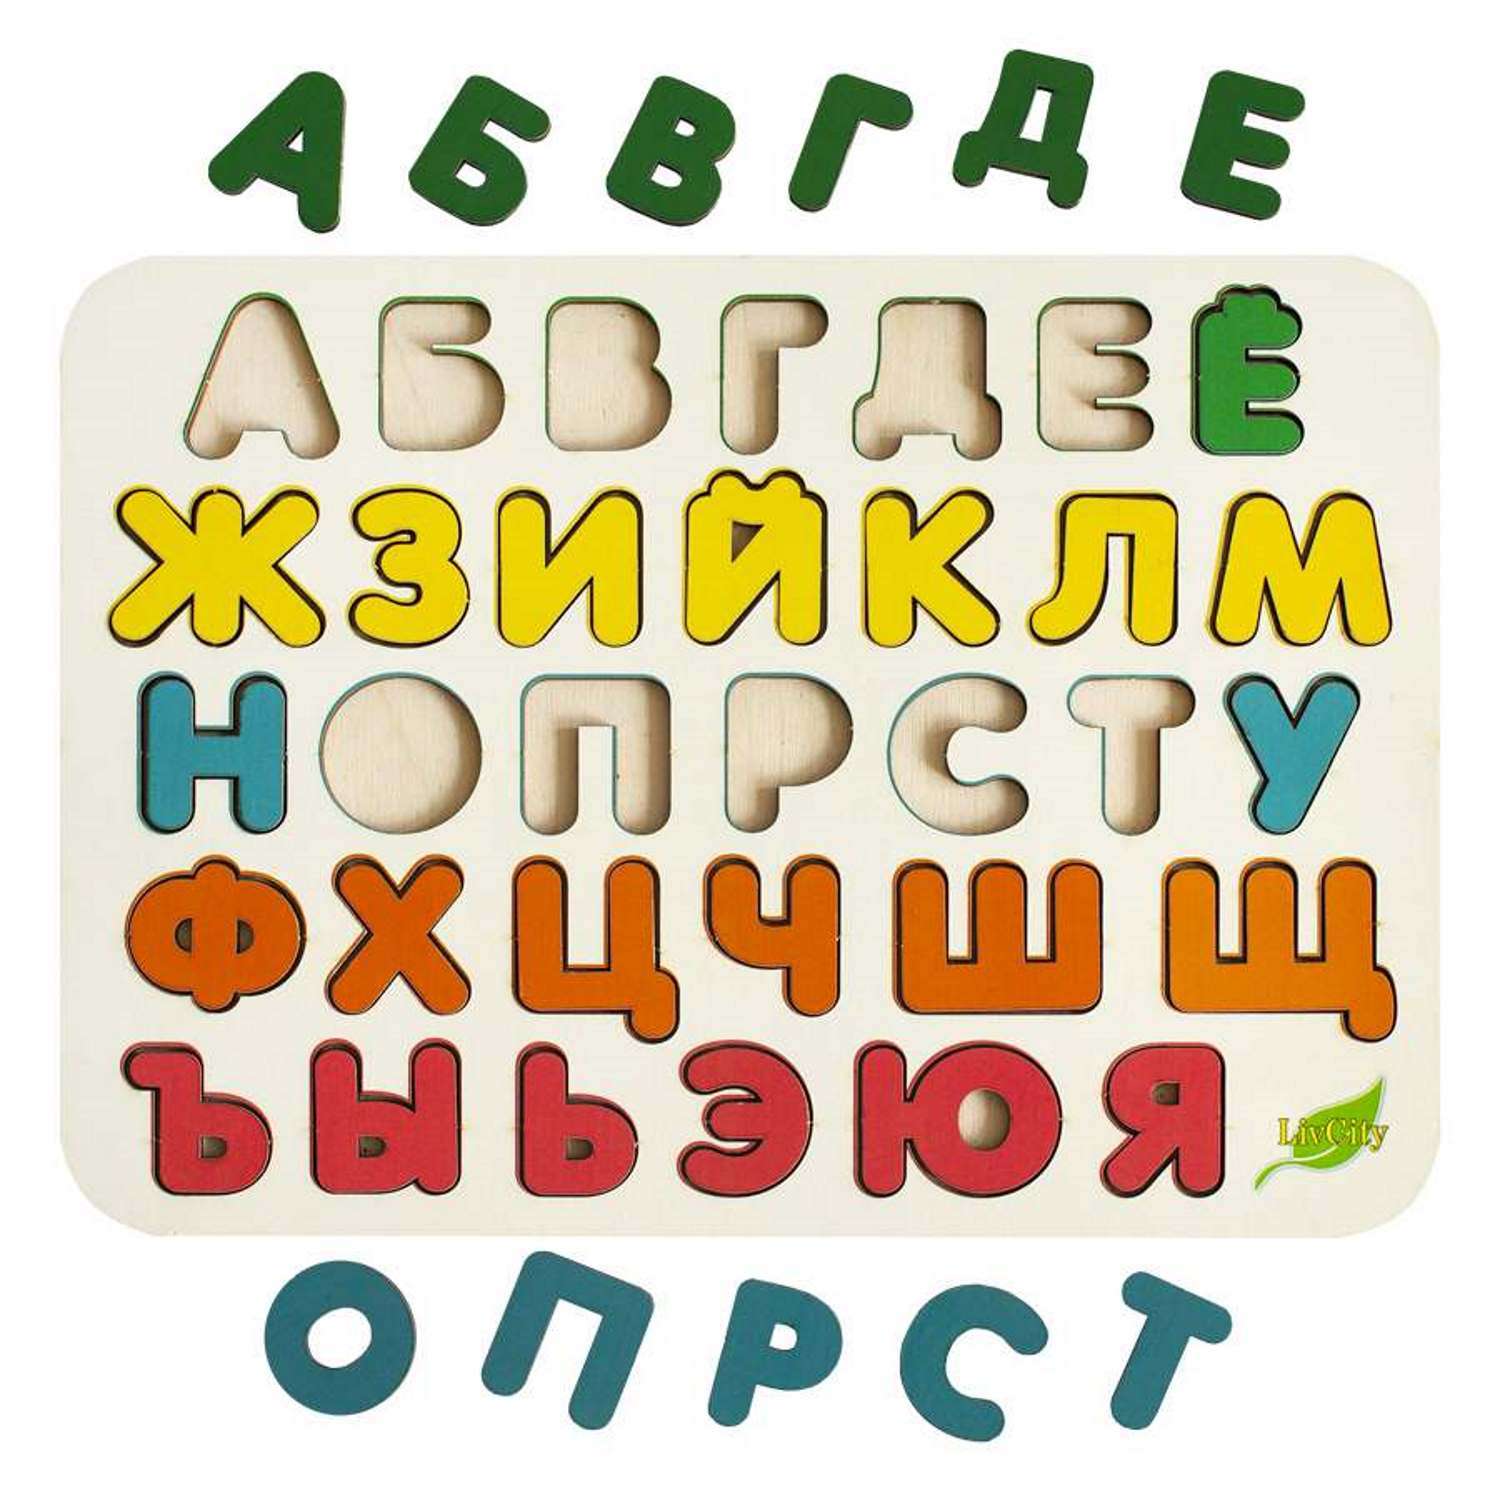 Игра развивающая LivCity Деревянный алфавит н00047 - фото 2